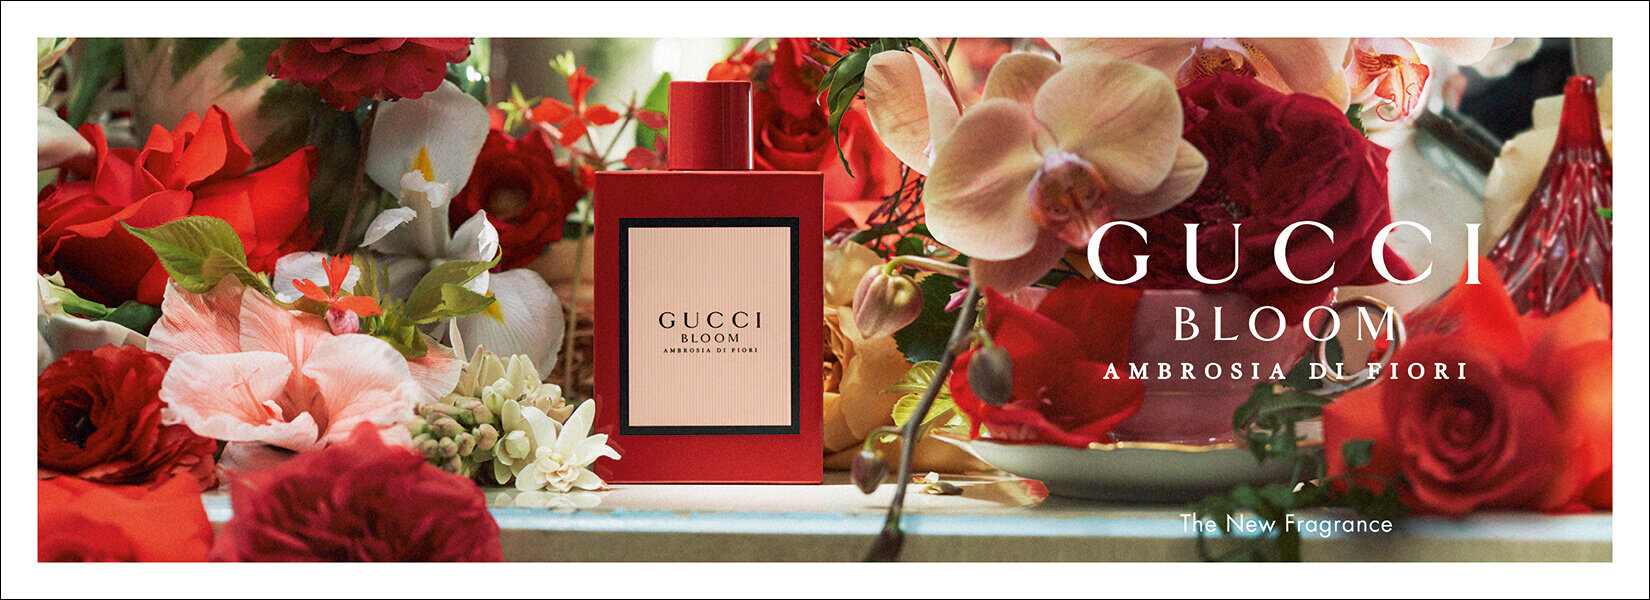  Gucci Bloom Ambrosia Di Fiori Campaign shot by Ari Marcopoulos 